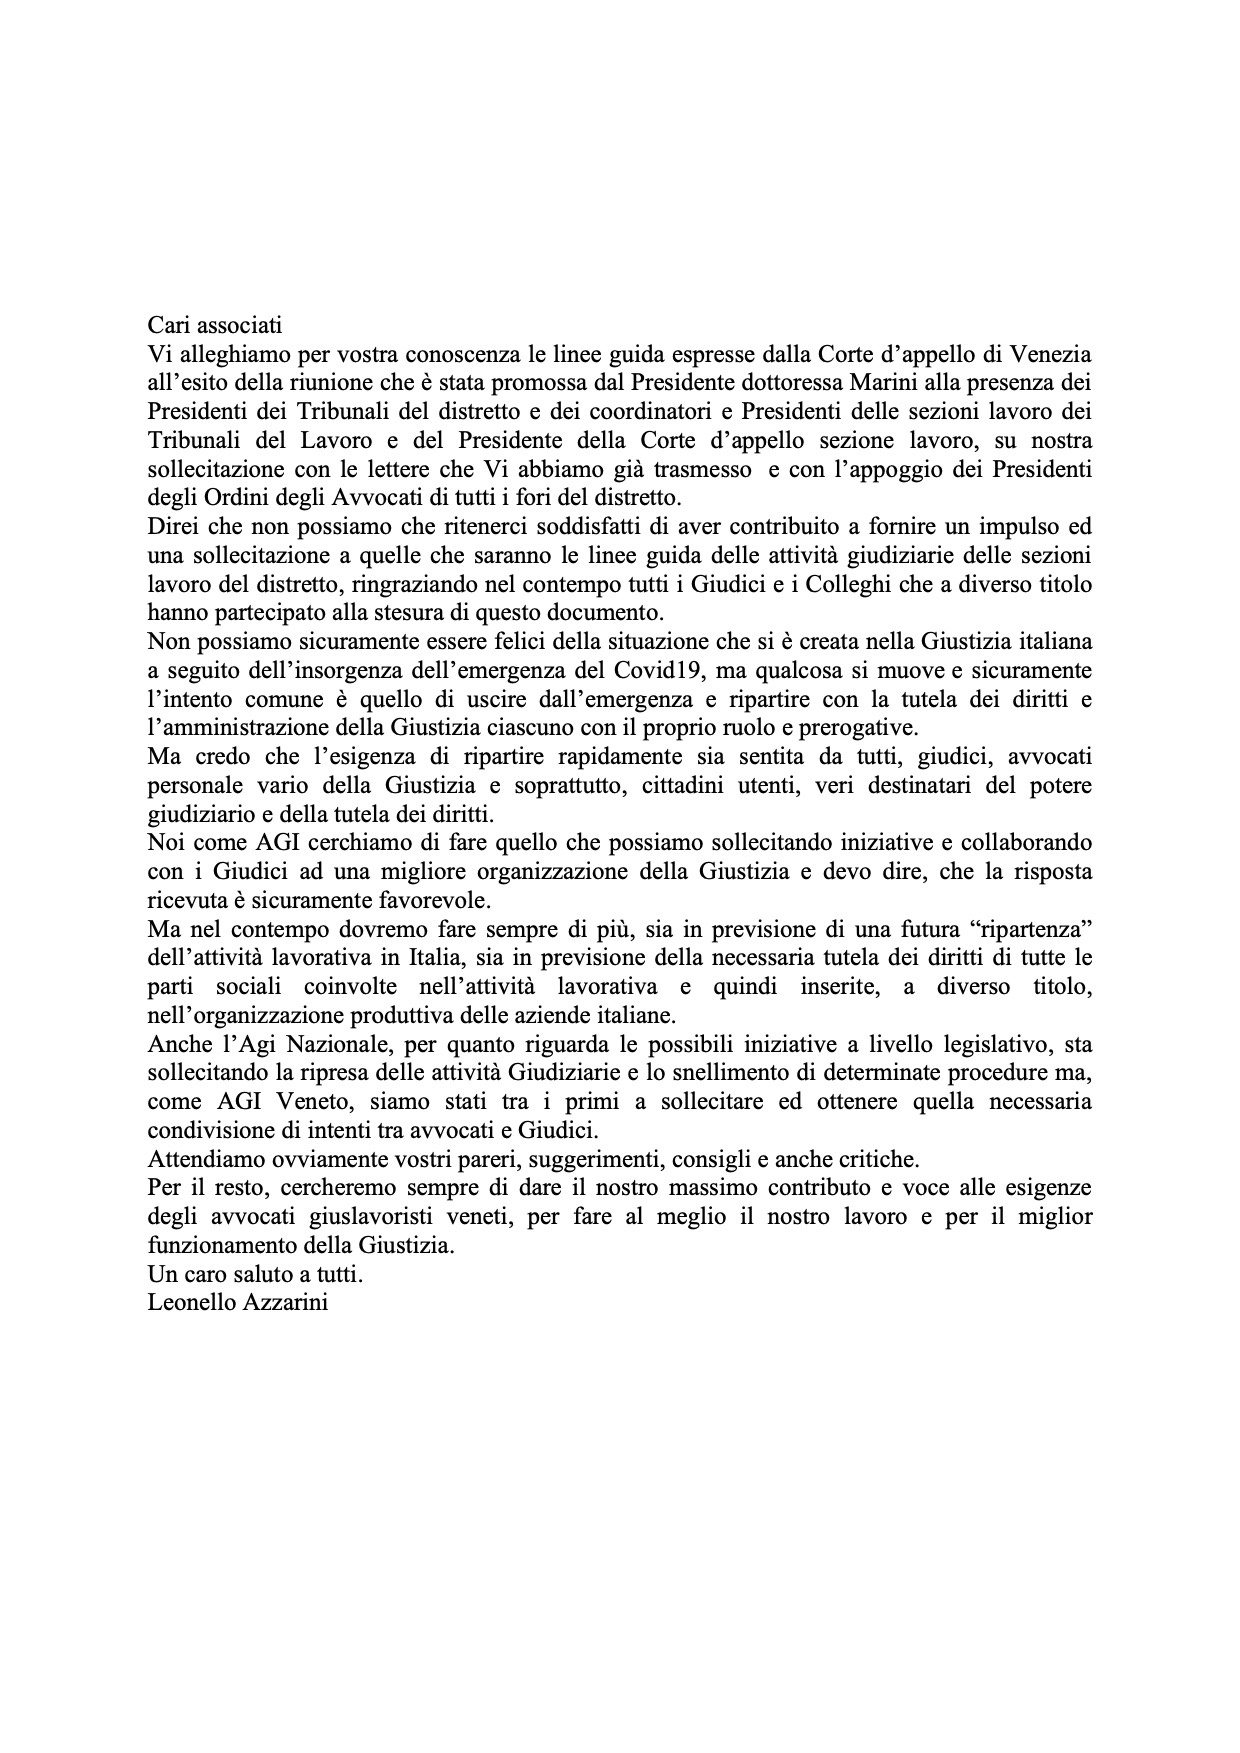 Lettera Presidente AGI Veneto 30.04.2020